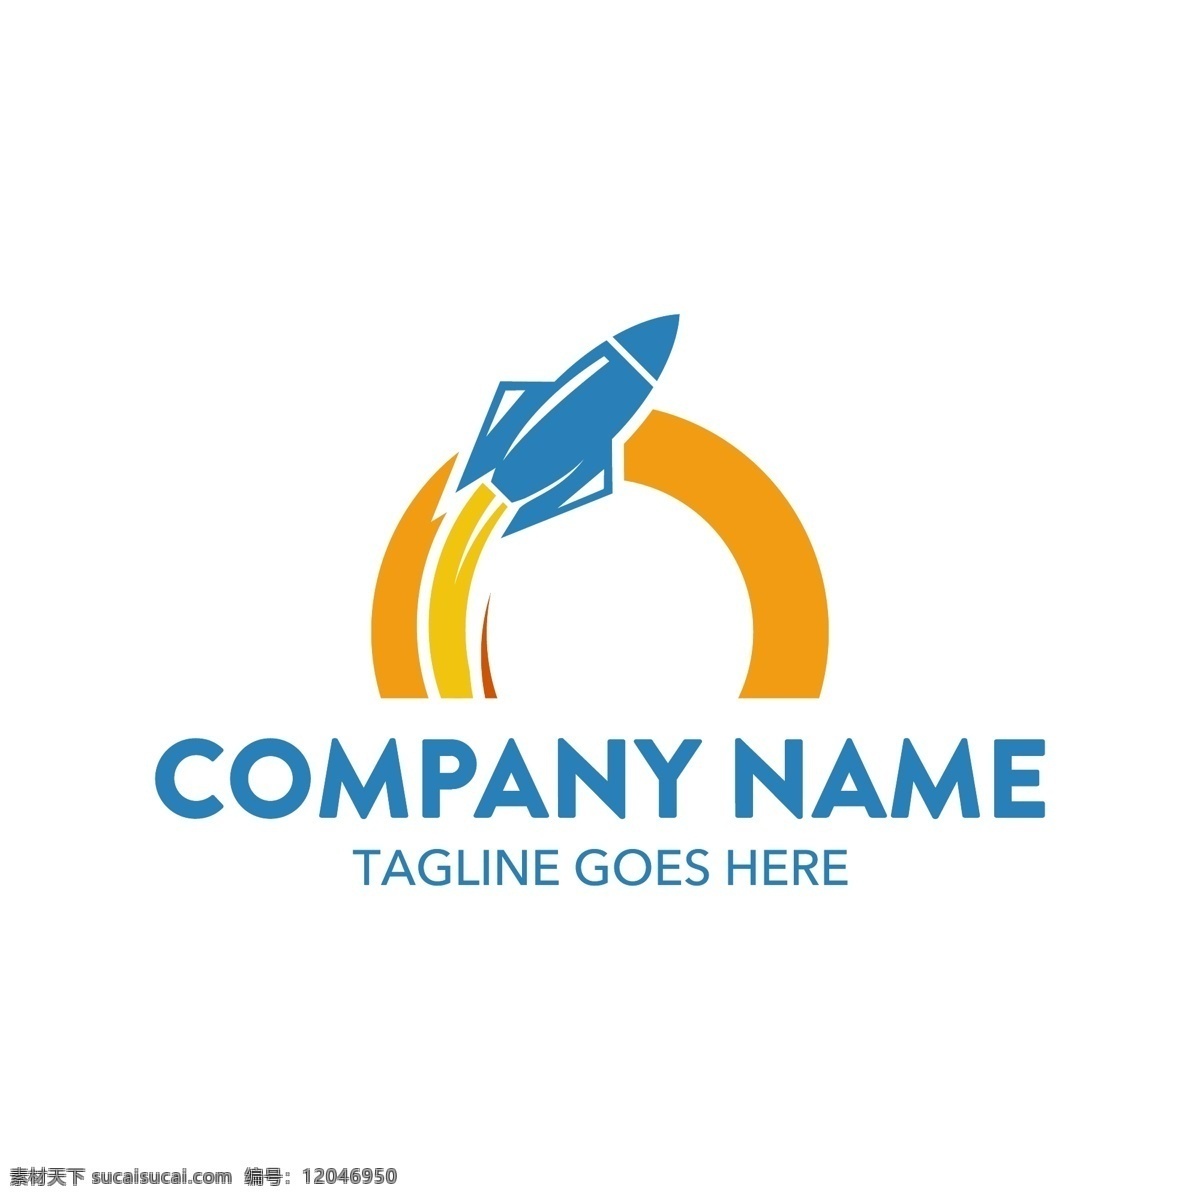 蓝色 火箭 科技 logo 矢量 蓝色火箭 飞行器 黄色圆形 航天科技 商业logo 抽象logo 概念 创意logo 行业logo logo设计 标志图形